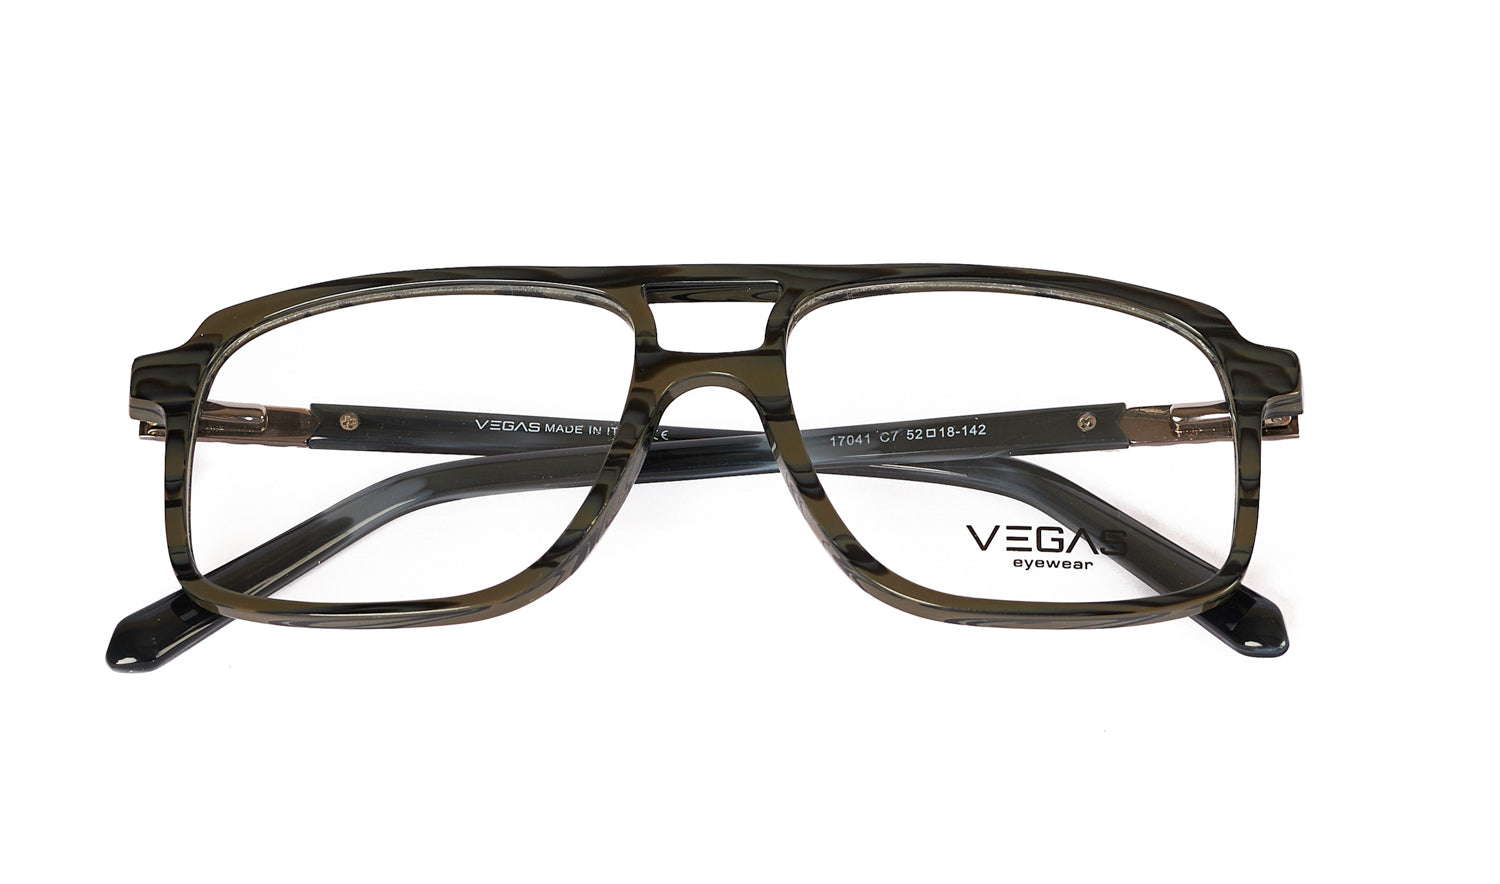 VEGAS 17041 - COC Eyewear